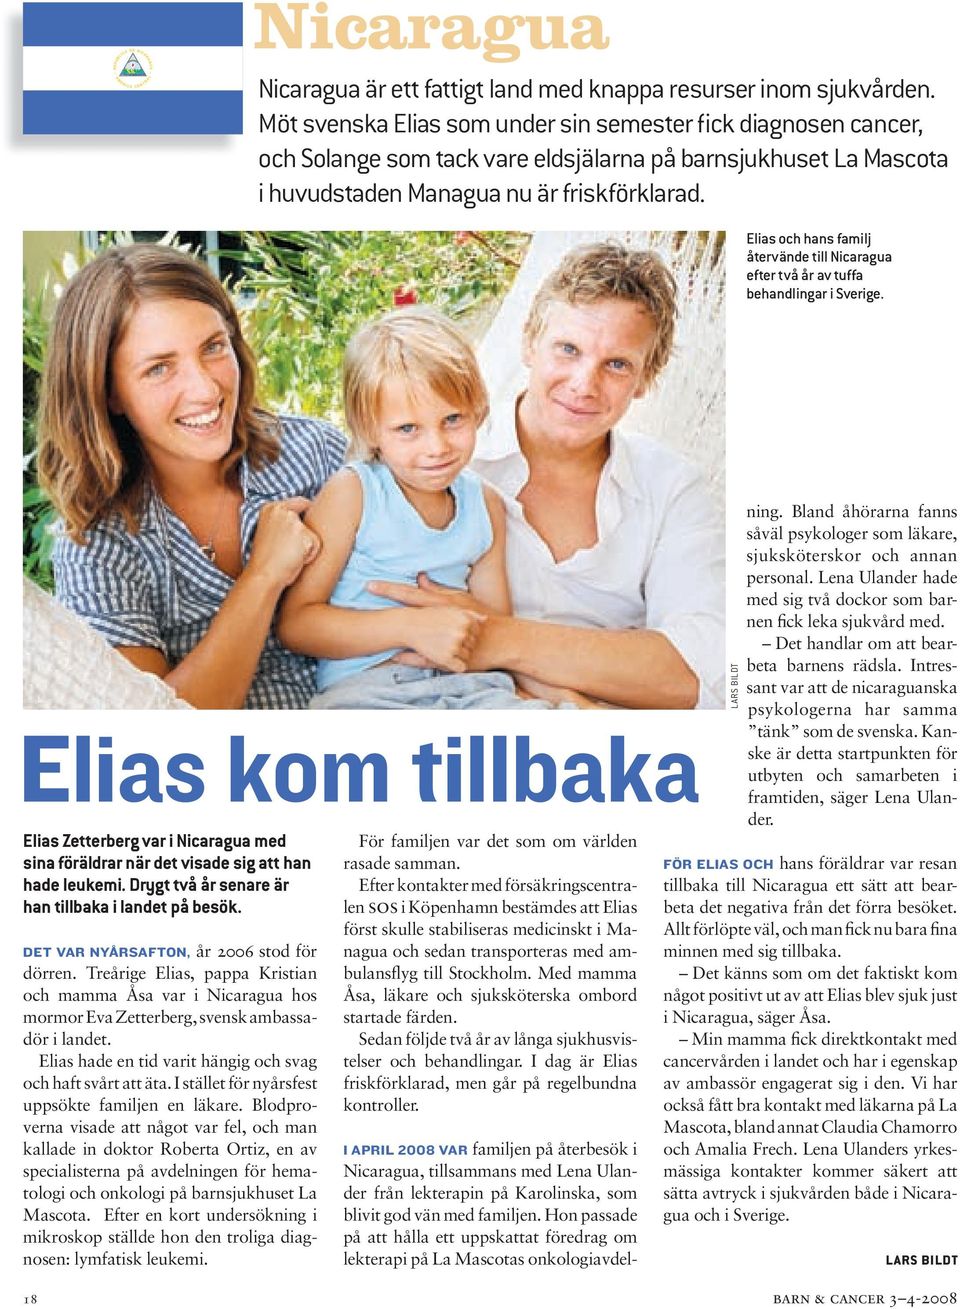 Elias och hans familj återvände till Nicaragua efter två år av tuffa behandlingar i Sverige.